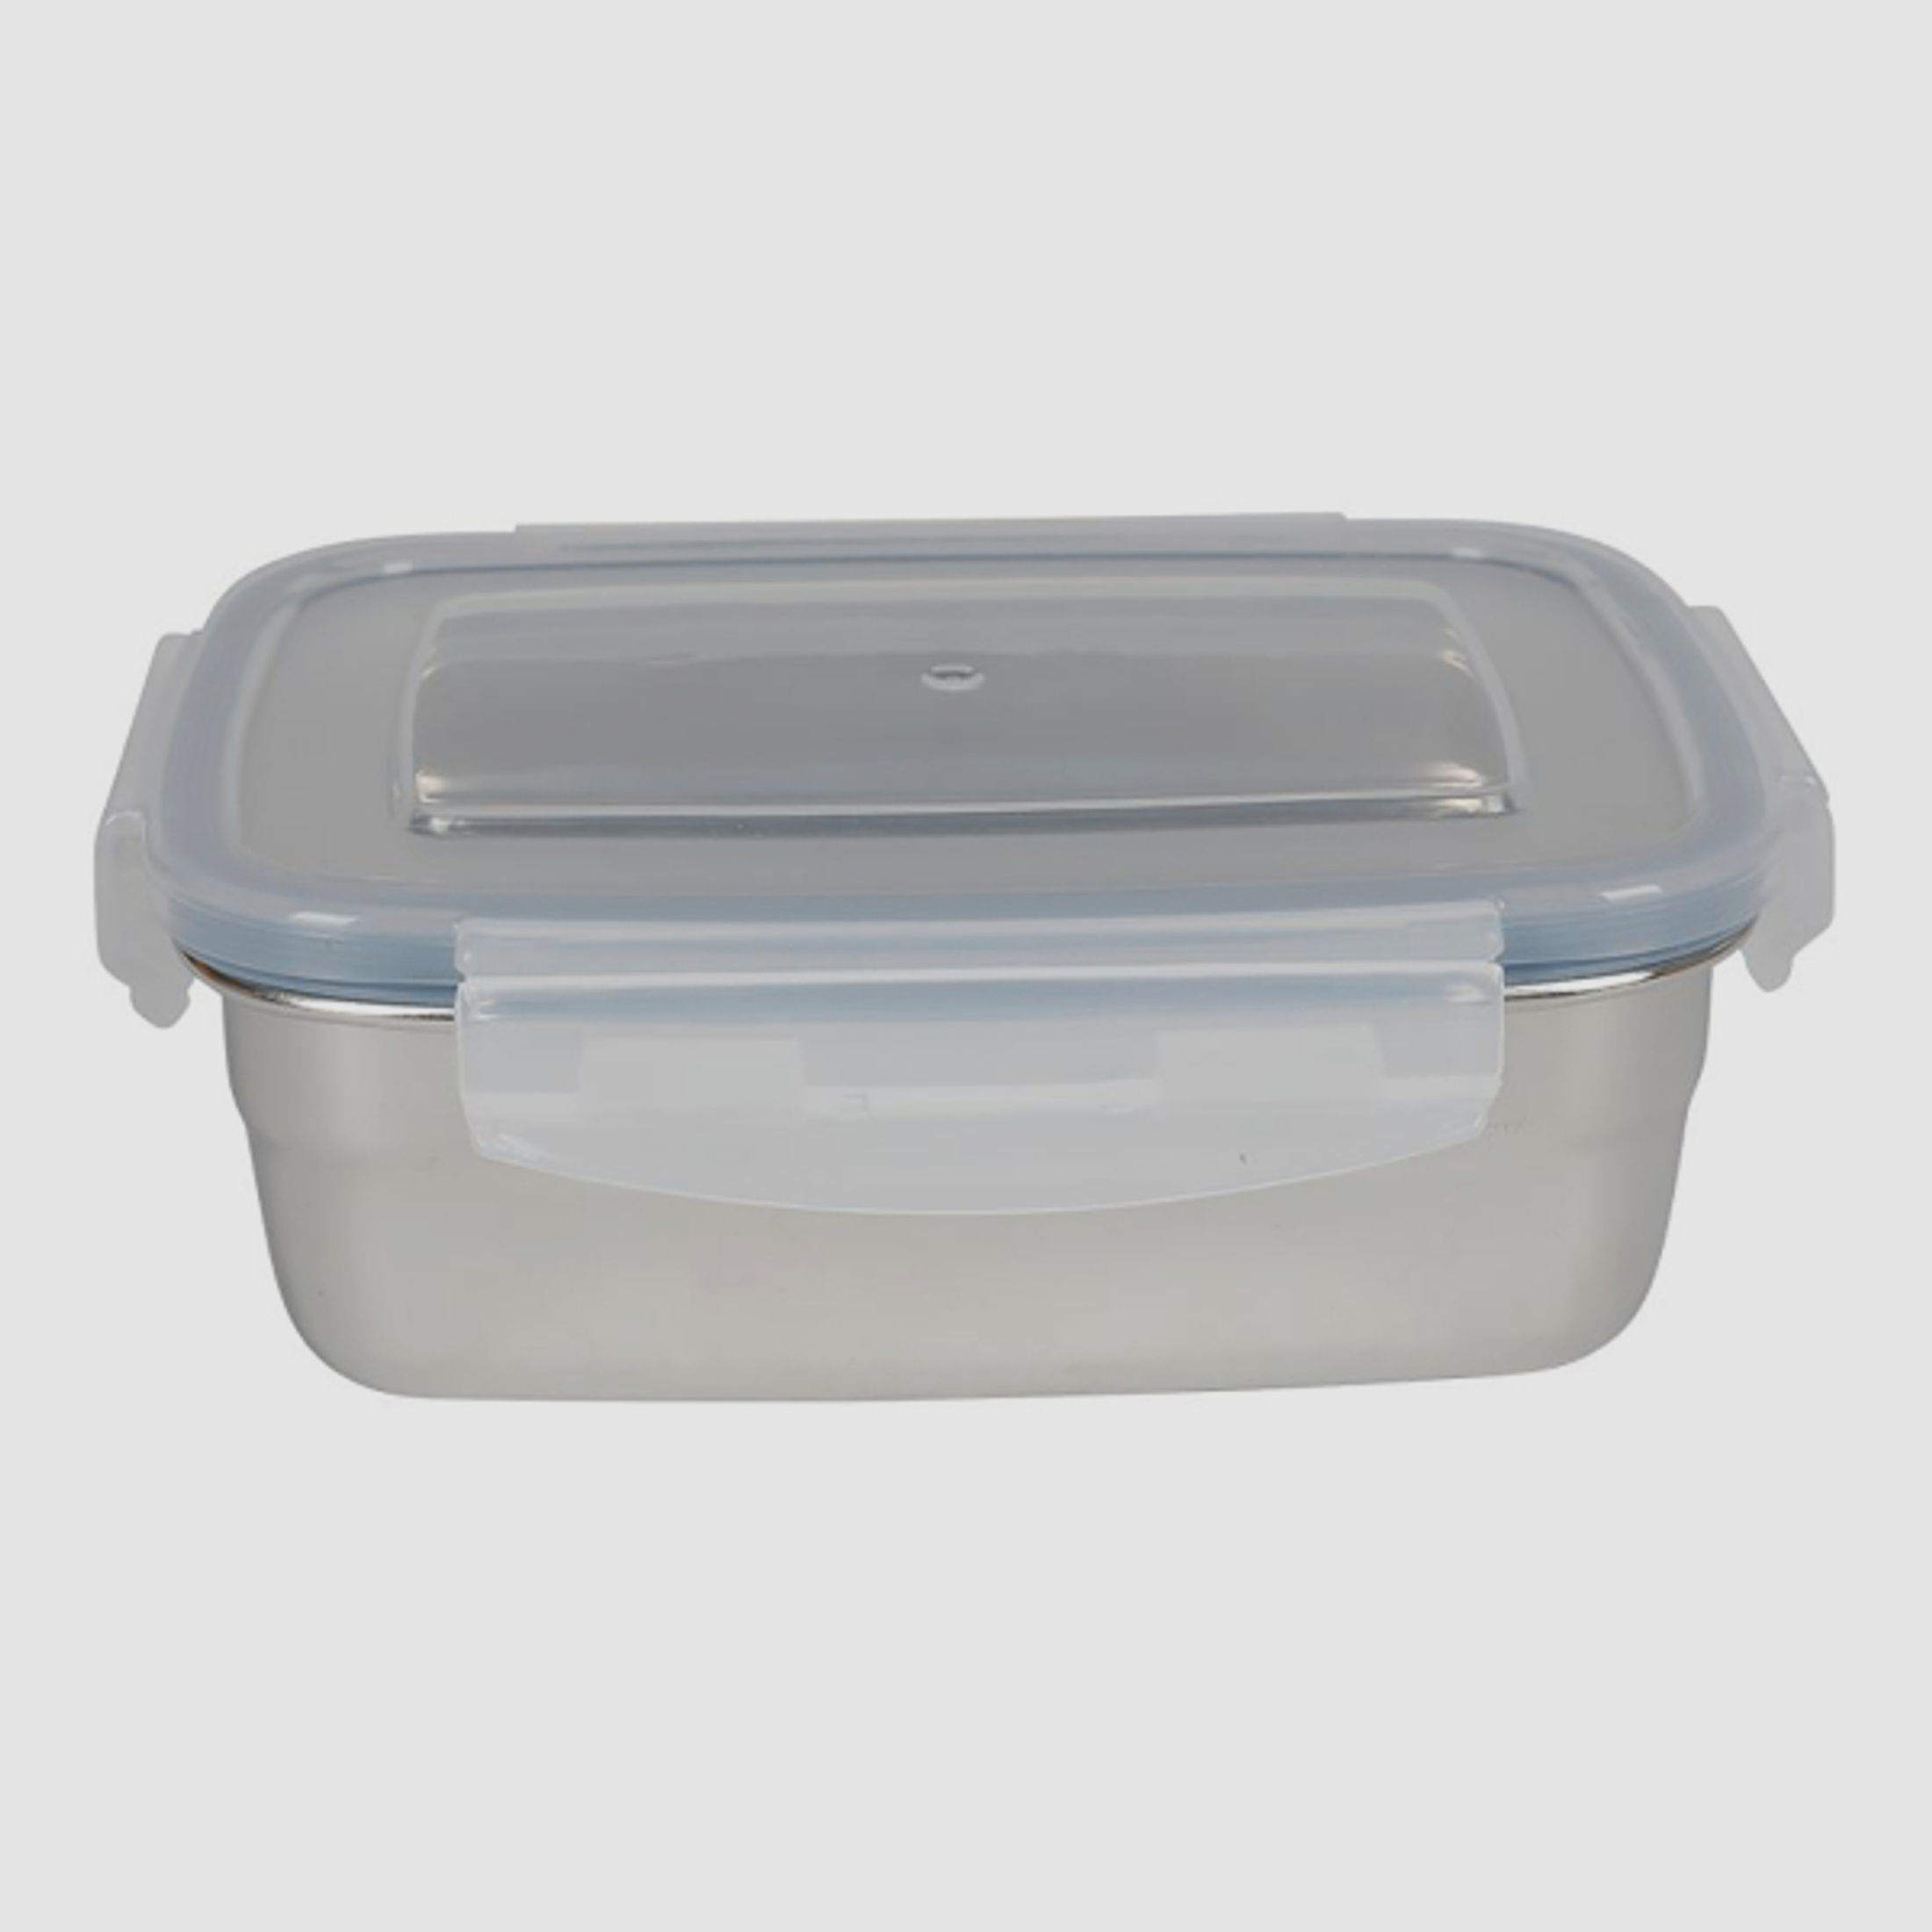 Brotbüchse / Köderdose mit Clipverschlussdeckel- 1800ml - 21,8 x 15,9 x 8,5cm - Edelstahl - Lunchbox